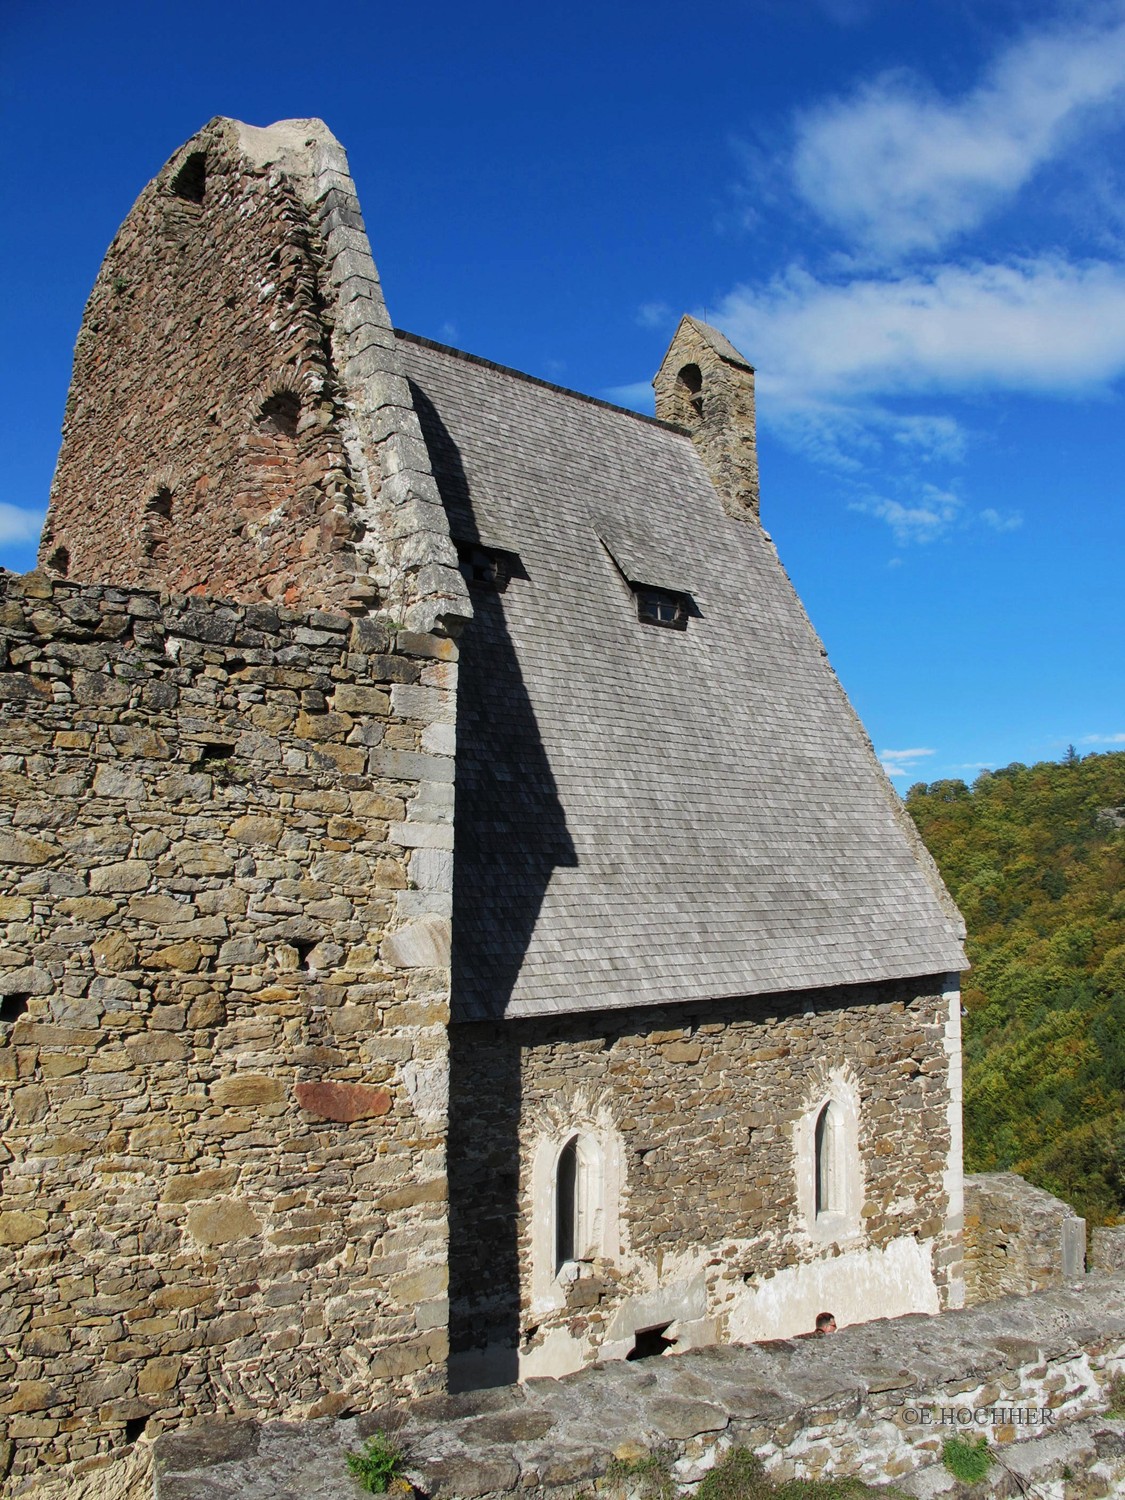 Burgkapelle